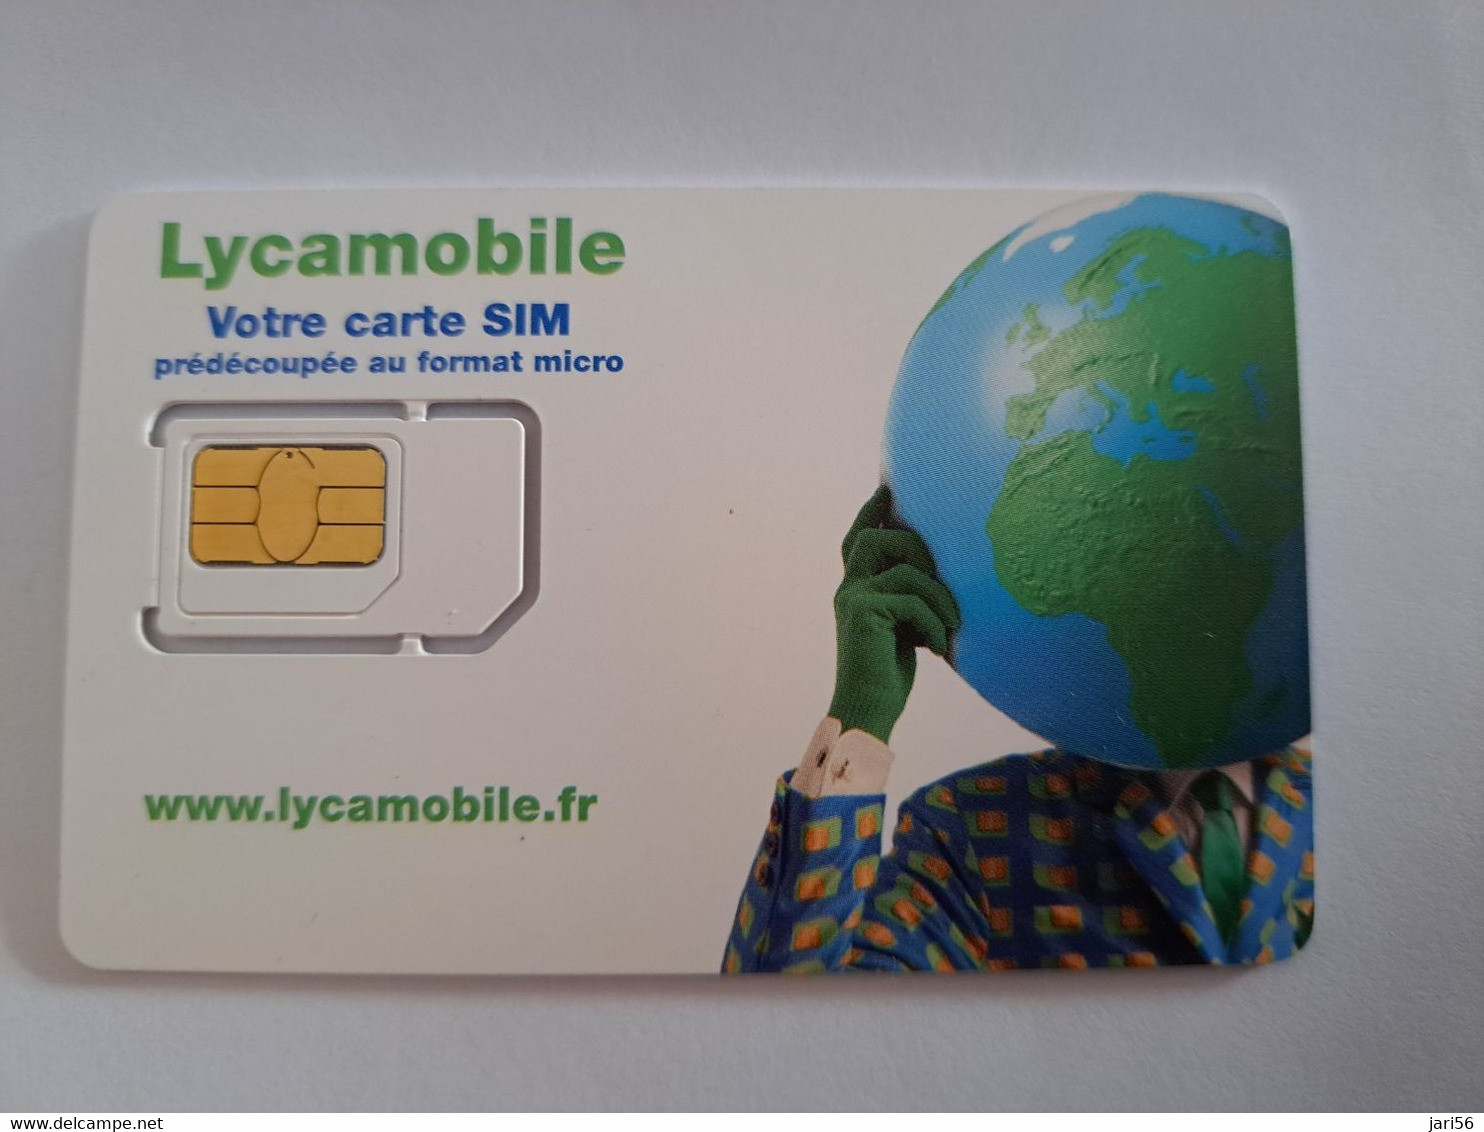 FRANCE/FRANKRIJK   SIM  GSM  LYCAMOBILE / VOTRE CARTE SIM    MOBILE  /  WITH CHIP   / MINT   ** 10608 ** - Prepaid: Mobicartes